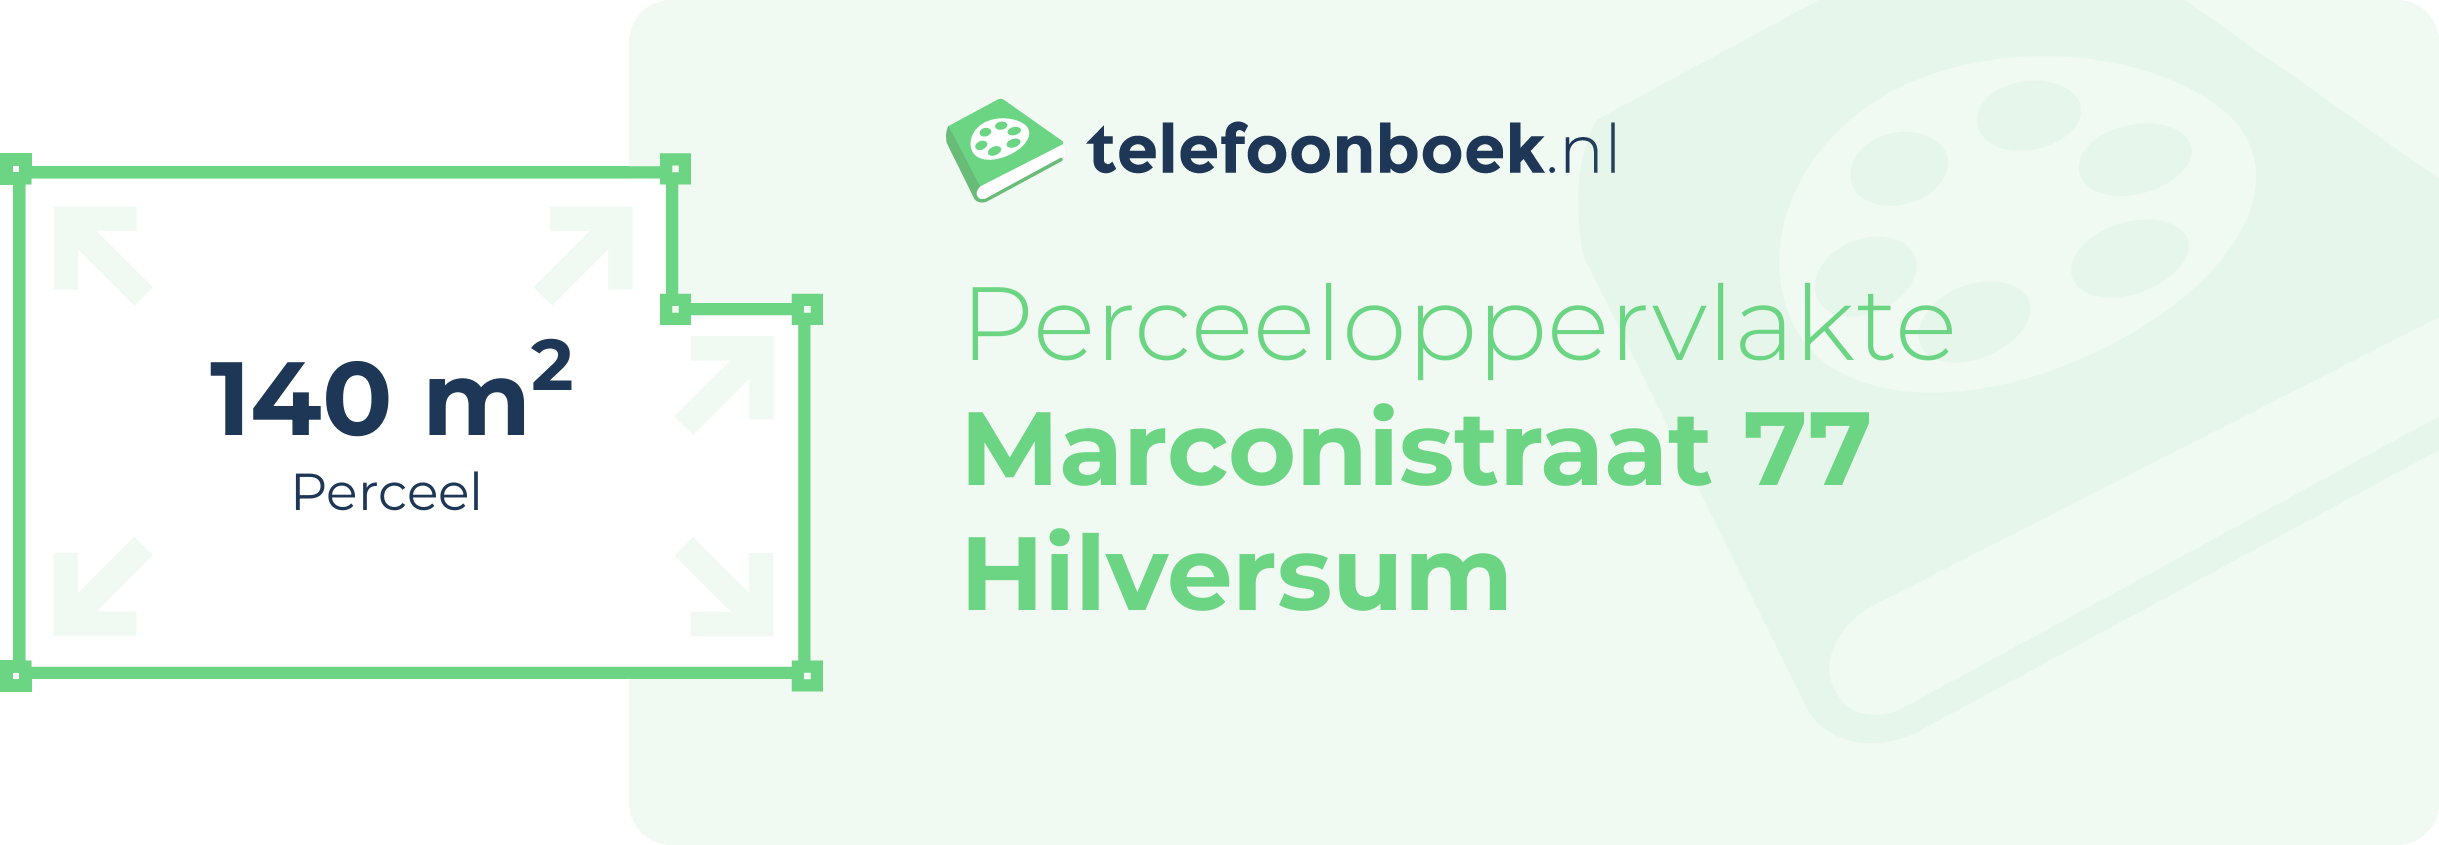 Perceeloppervlakte Marconistraat 77 Hilversum